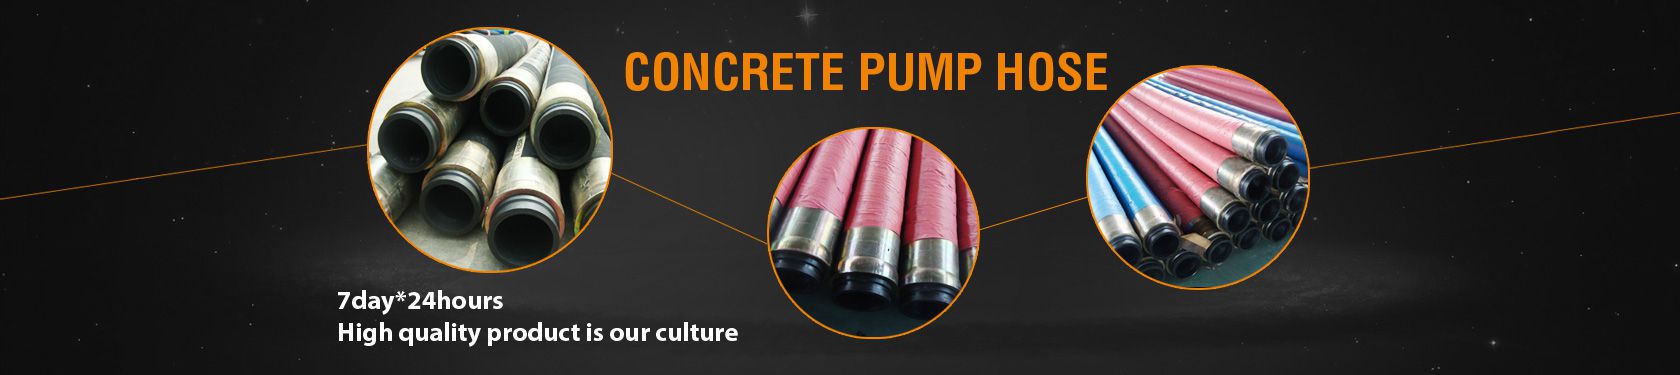 Concrete Pump Hose